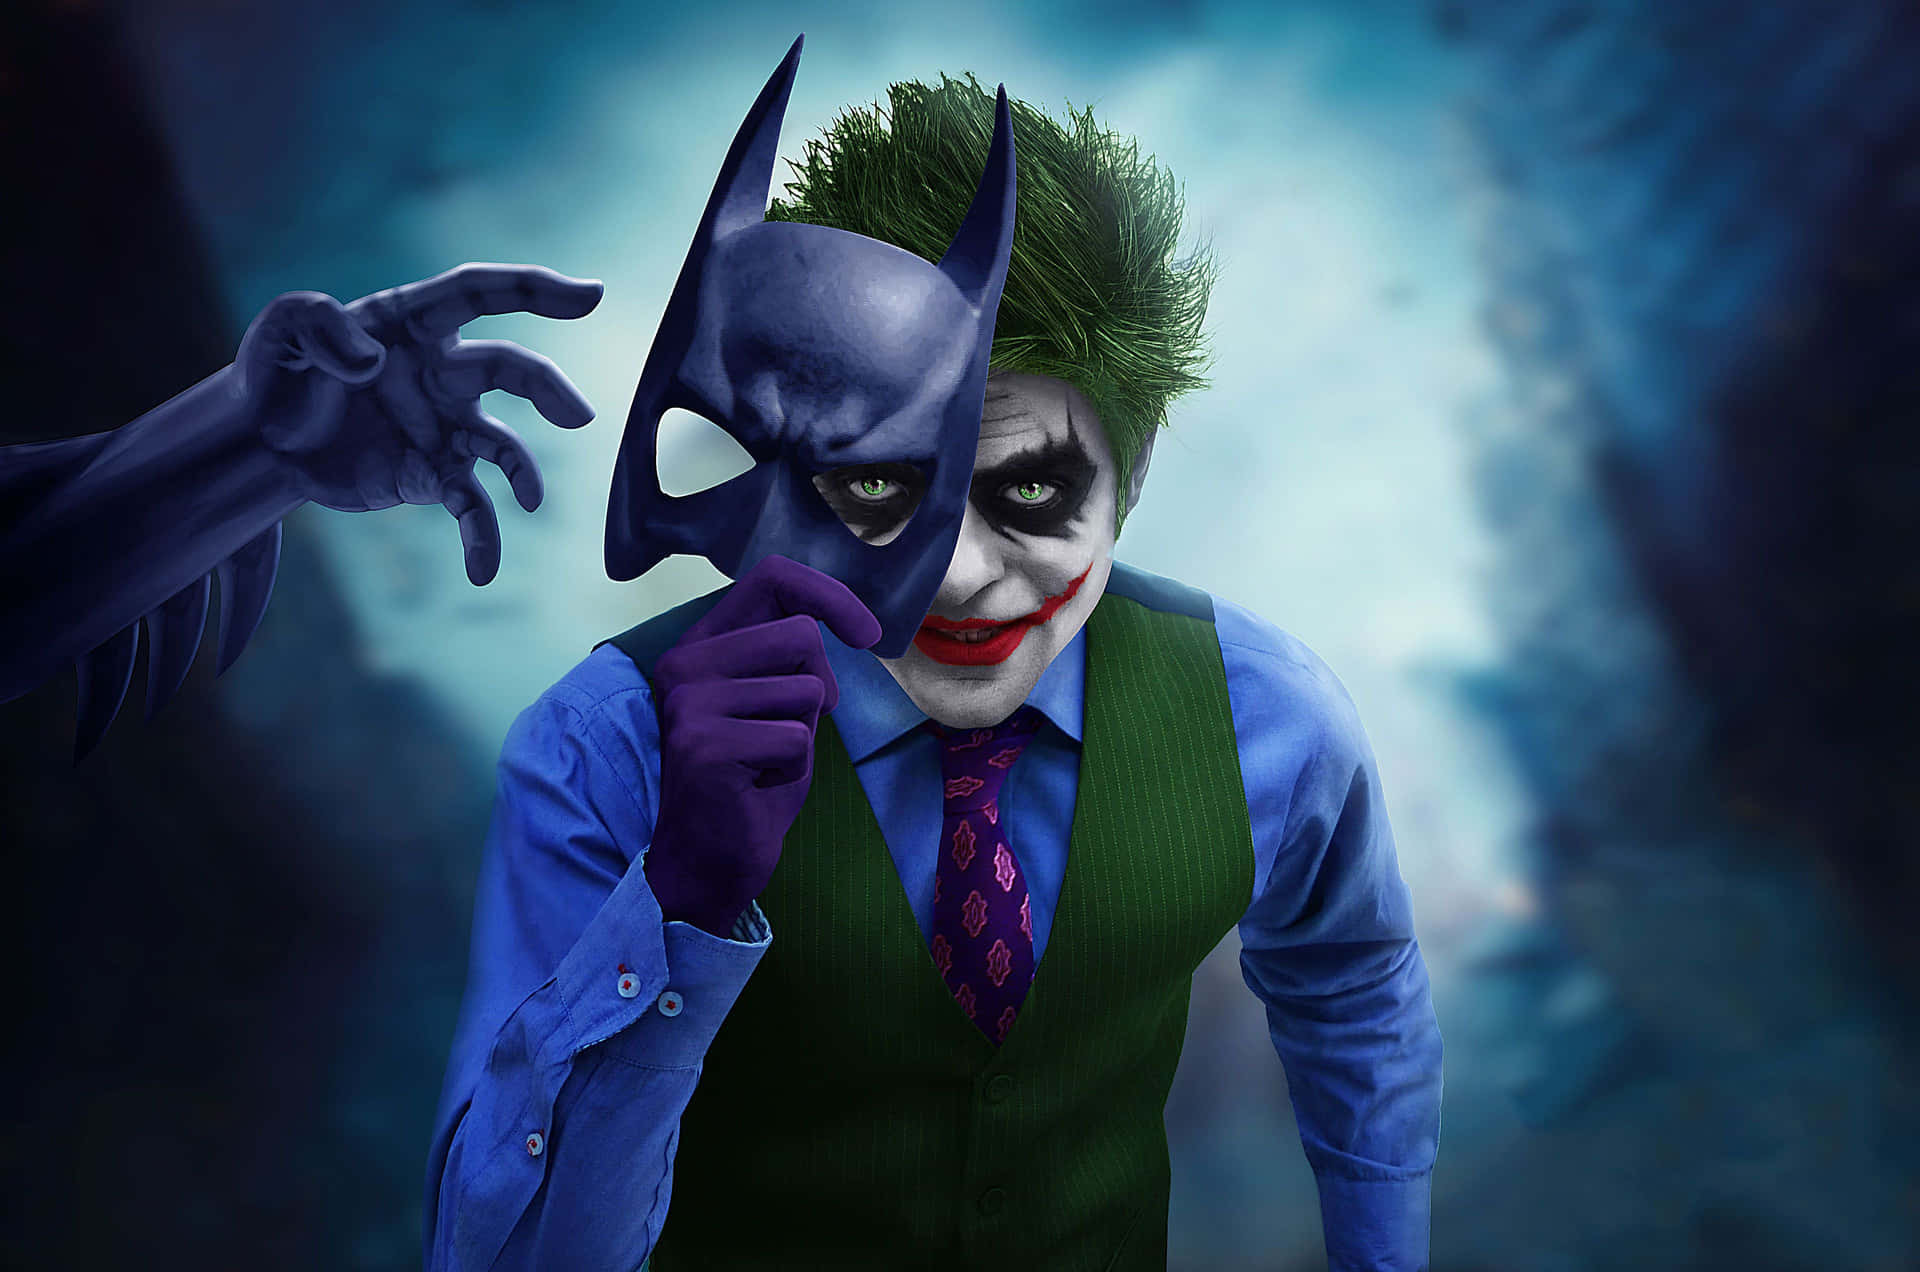 A Young Half Batman Half Joker Poster Wallpaper